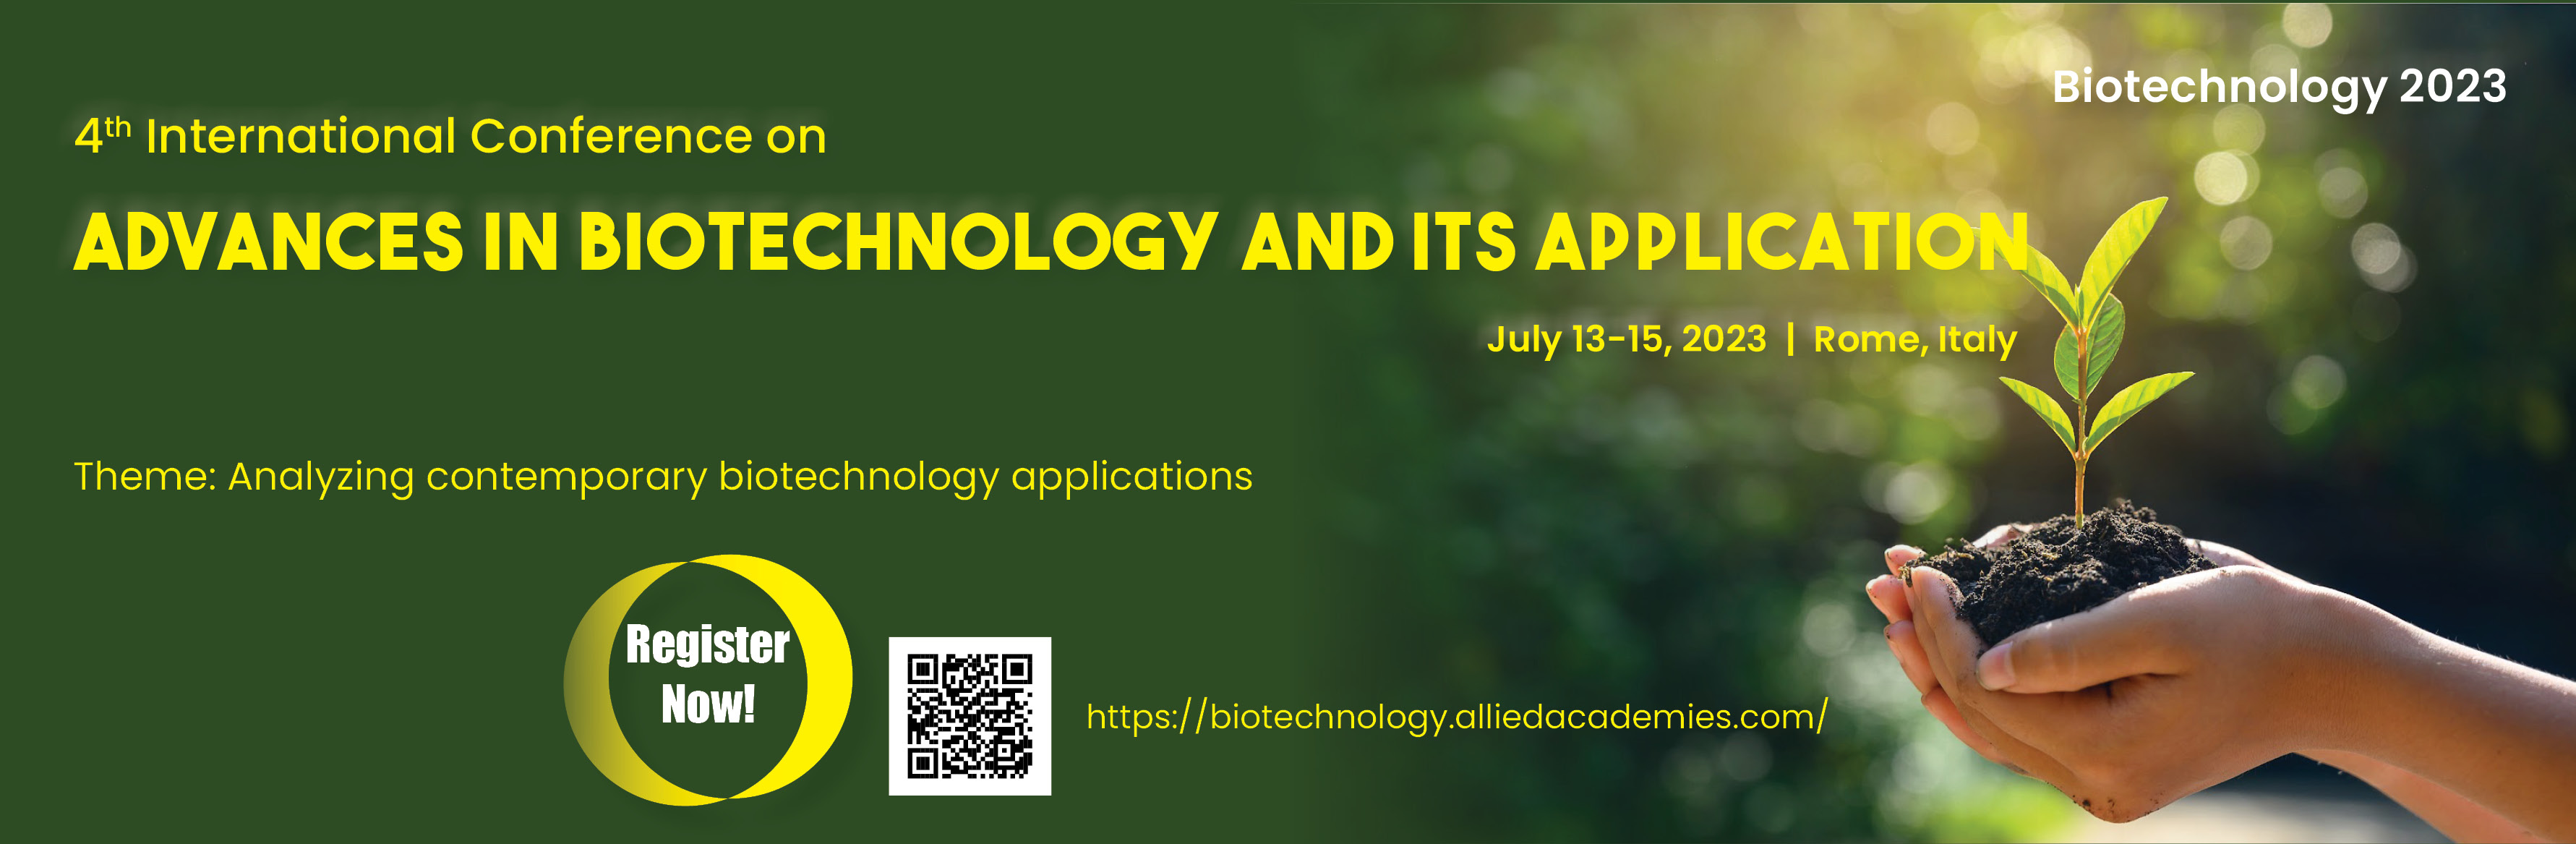 Biotechnology Conferences 2023 Biotechnology Conference